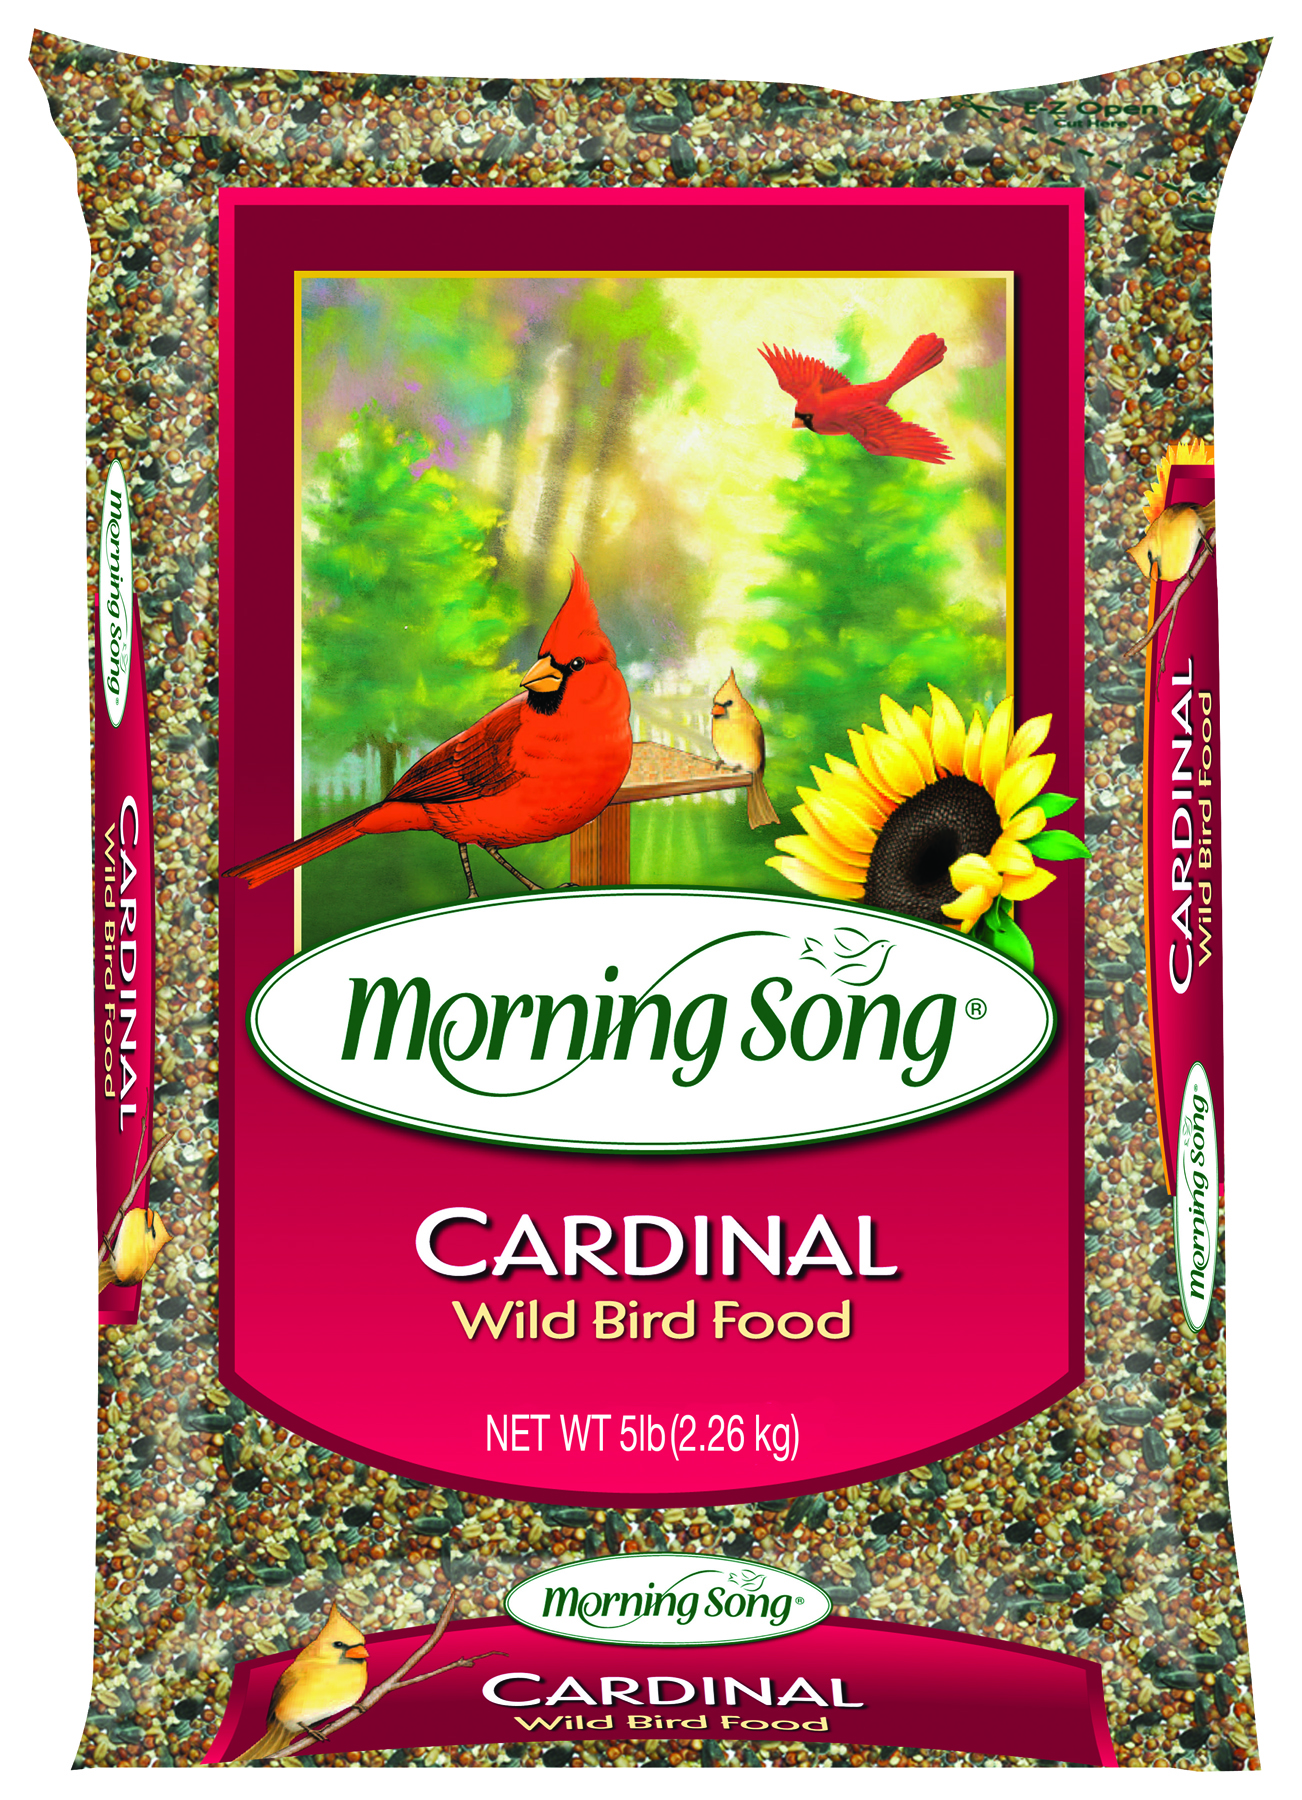 MORNING SONG CARDINAL WILD BIRD FOOD